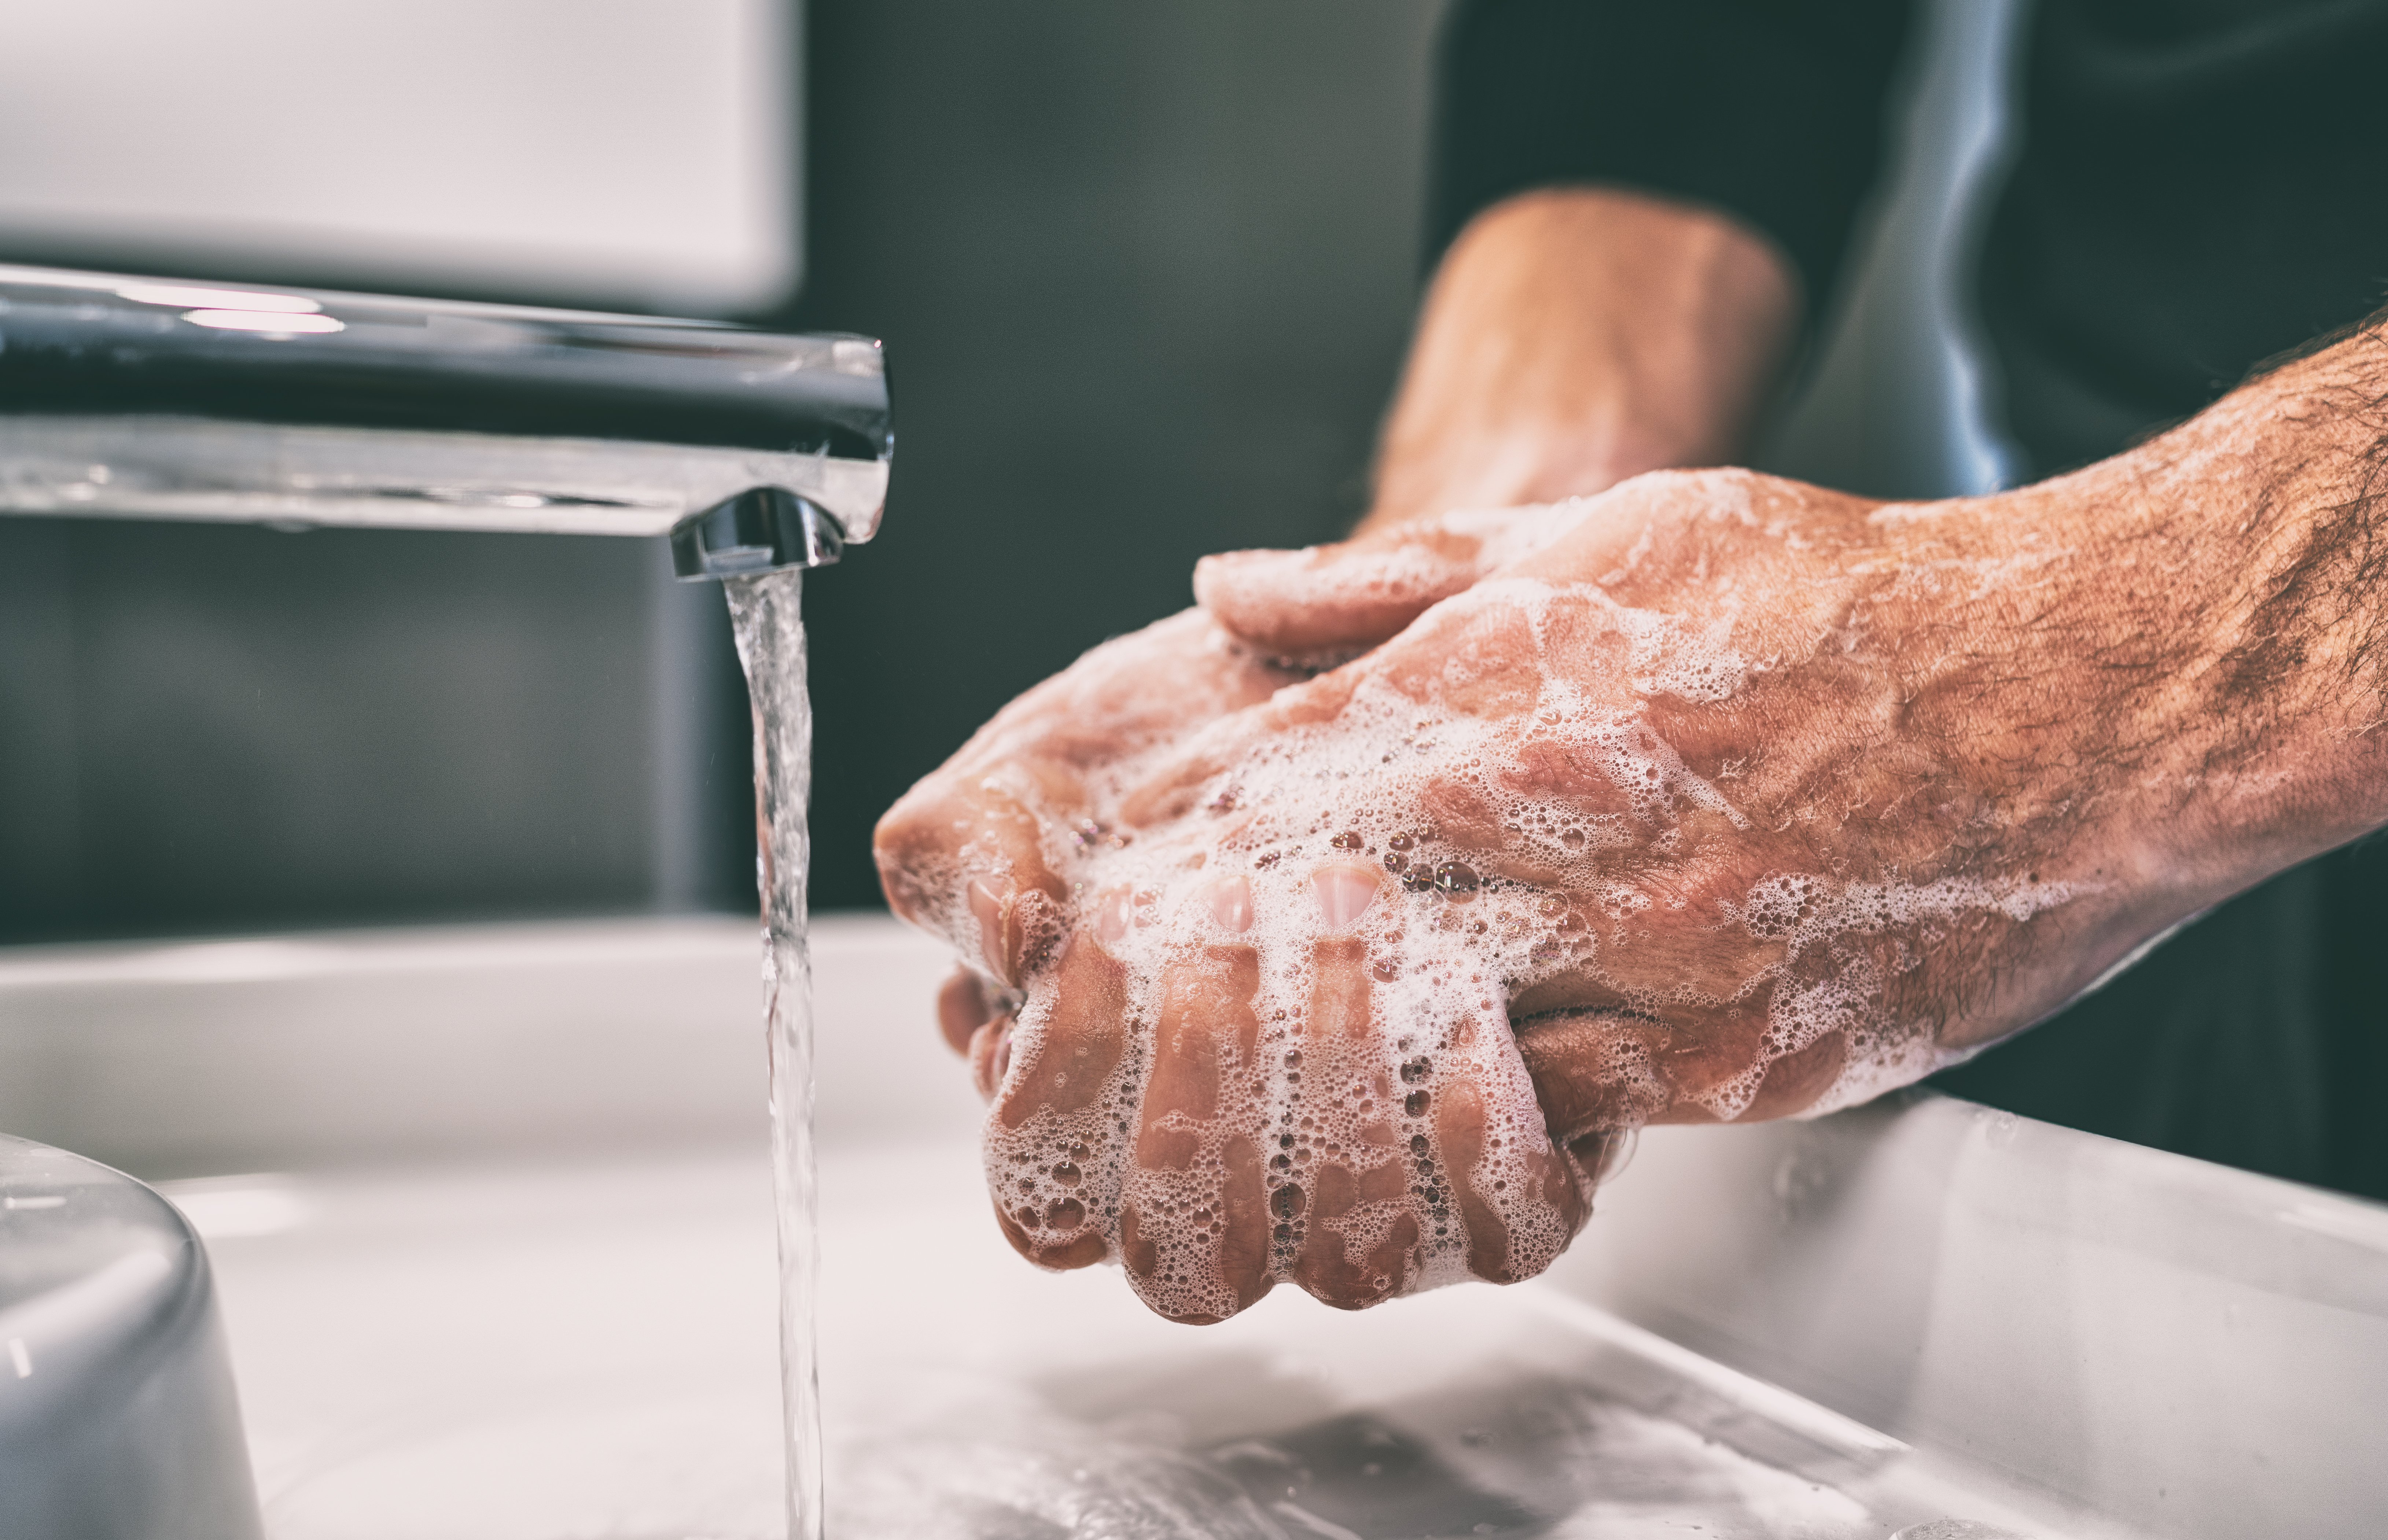 Conforme a Organização Mundial da Saúde, lavar as mãos reduz em até 40% o risco de contrair doenças como gripes e resfriados.